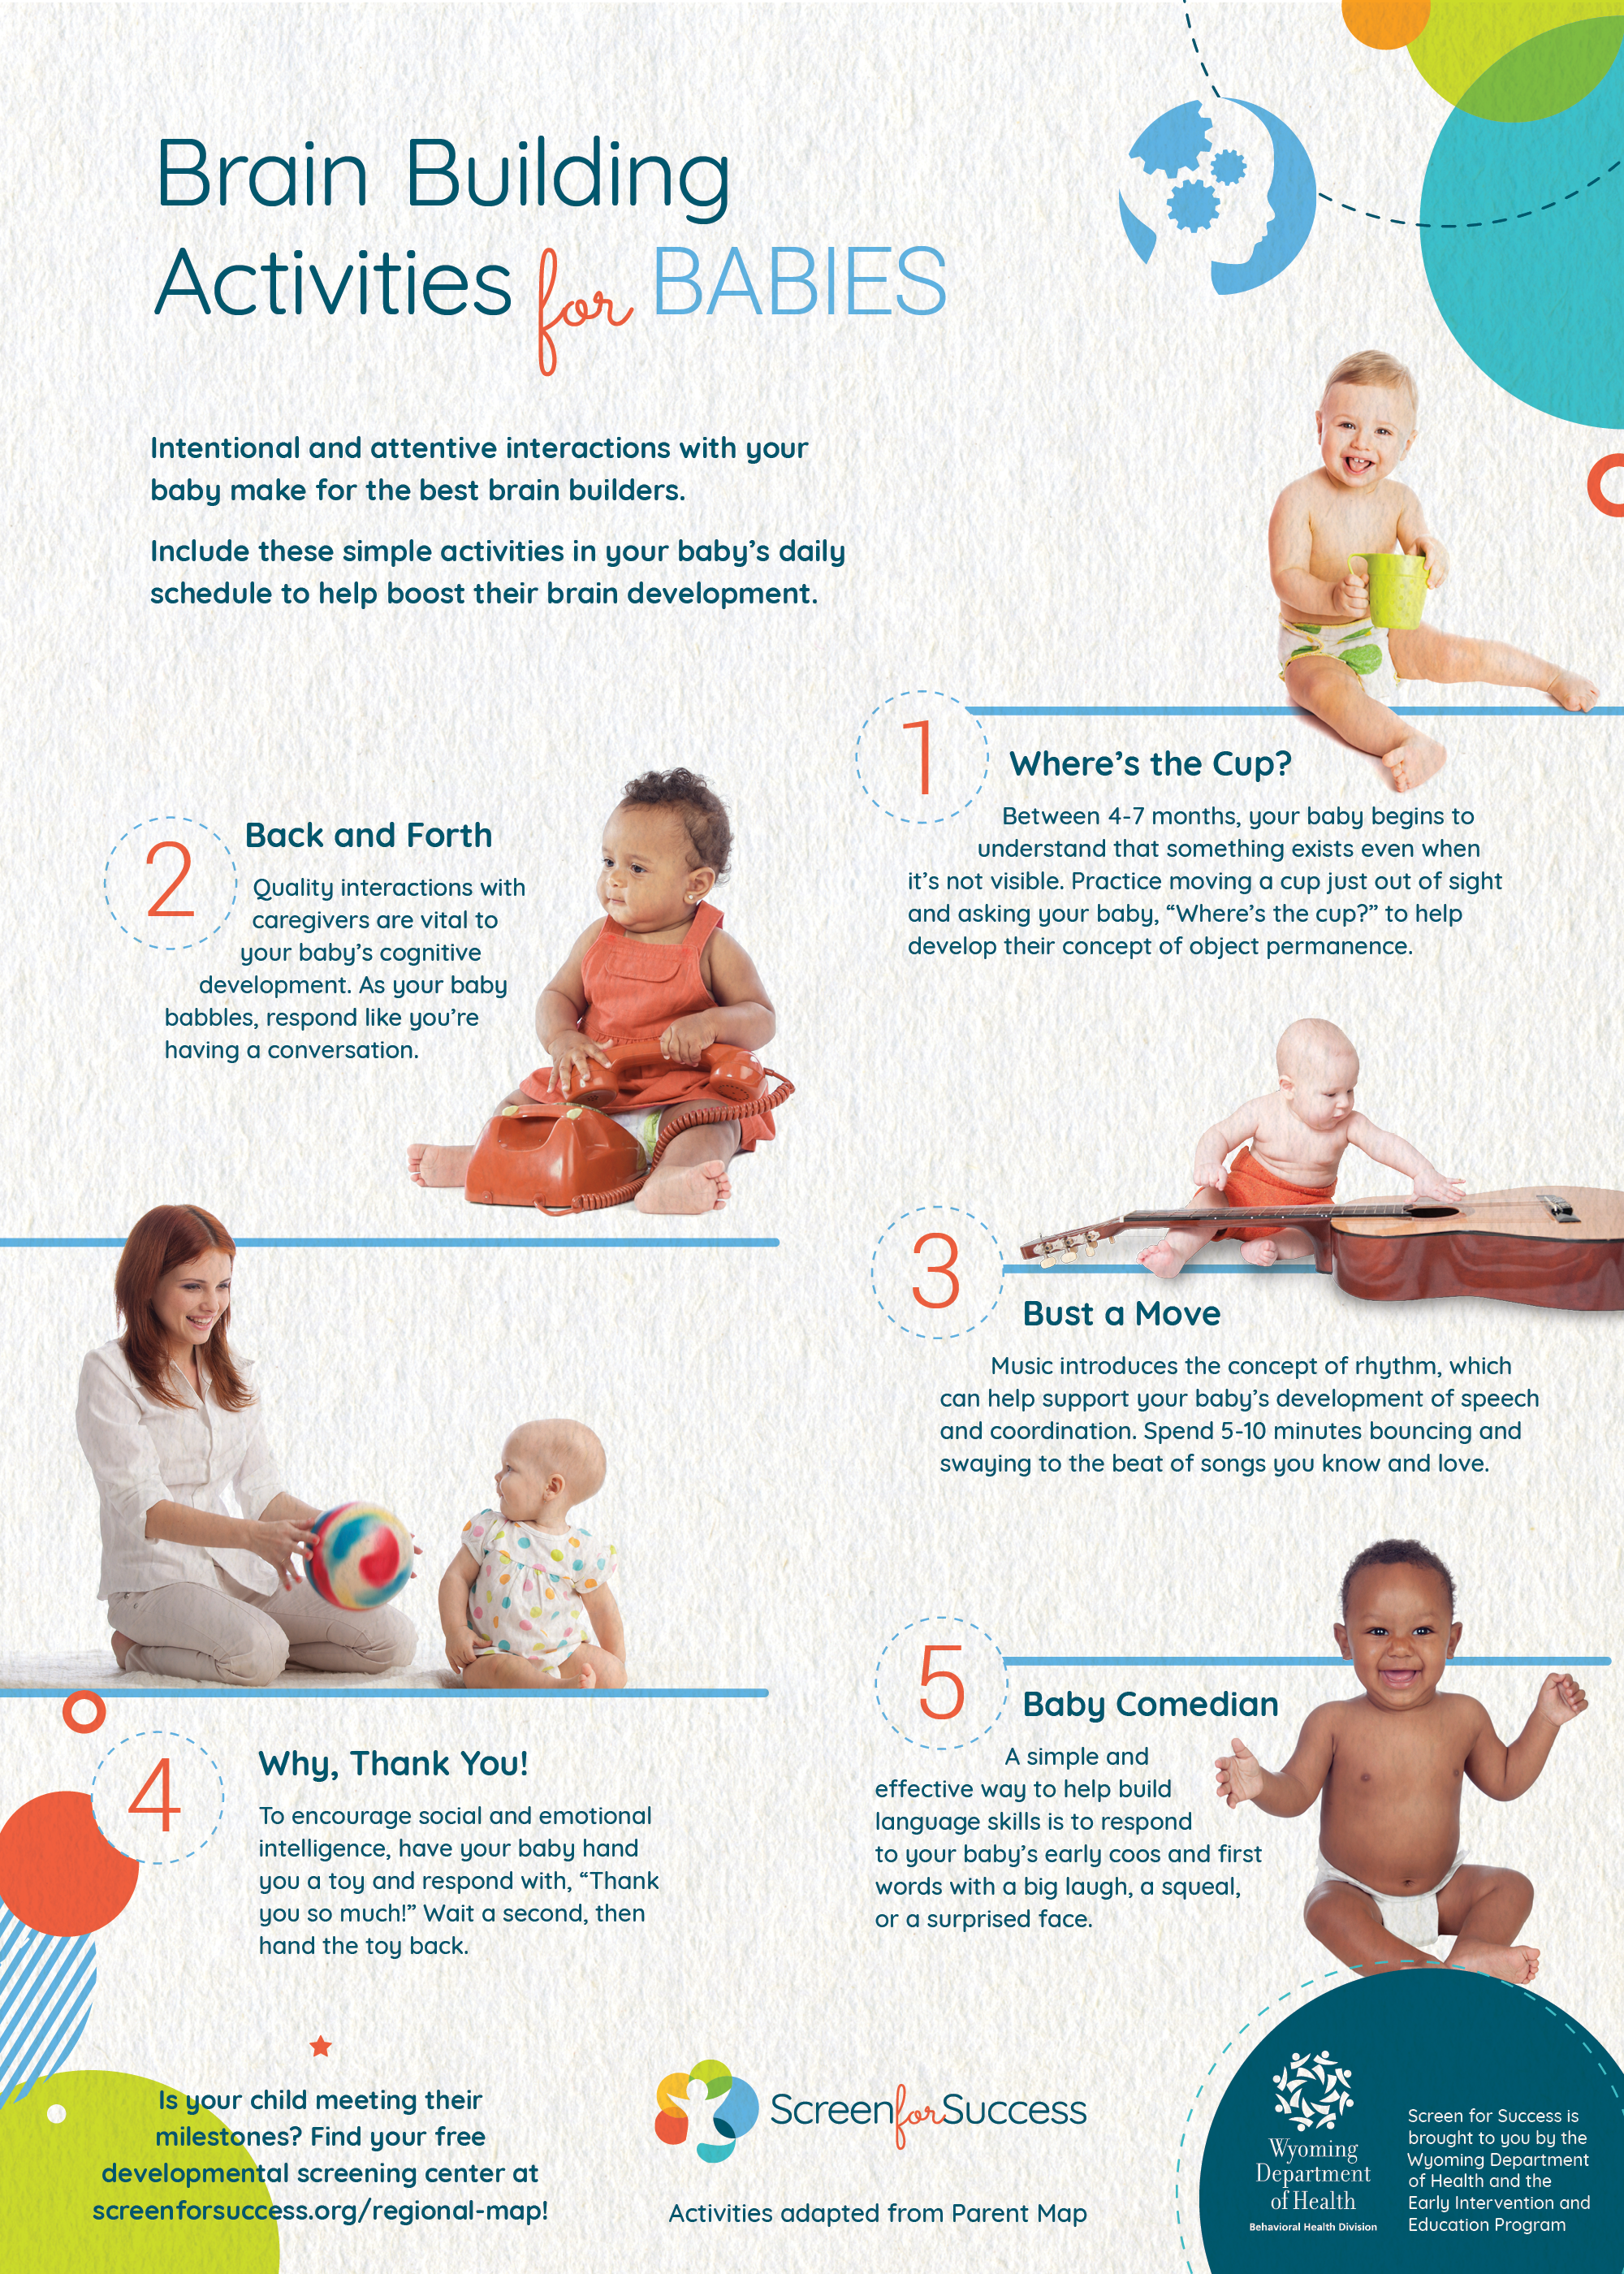 Brain Building Activities for Babies